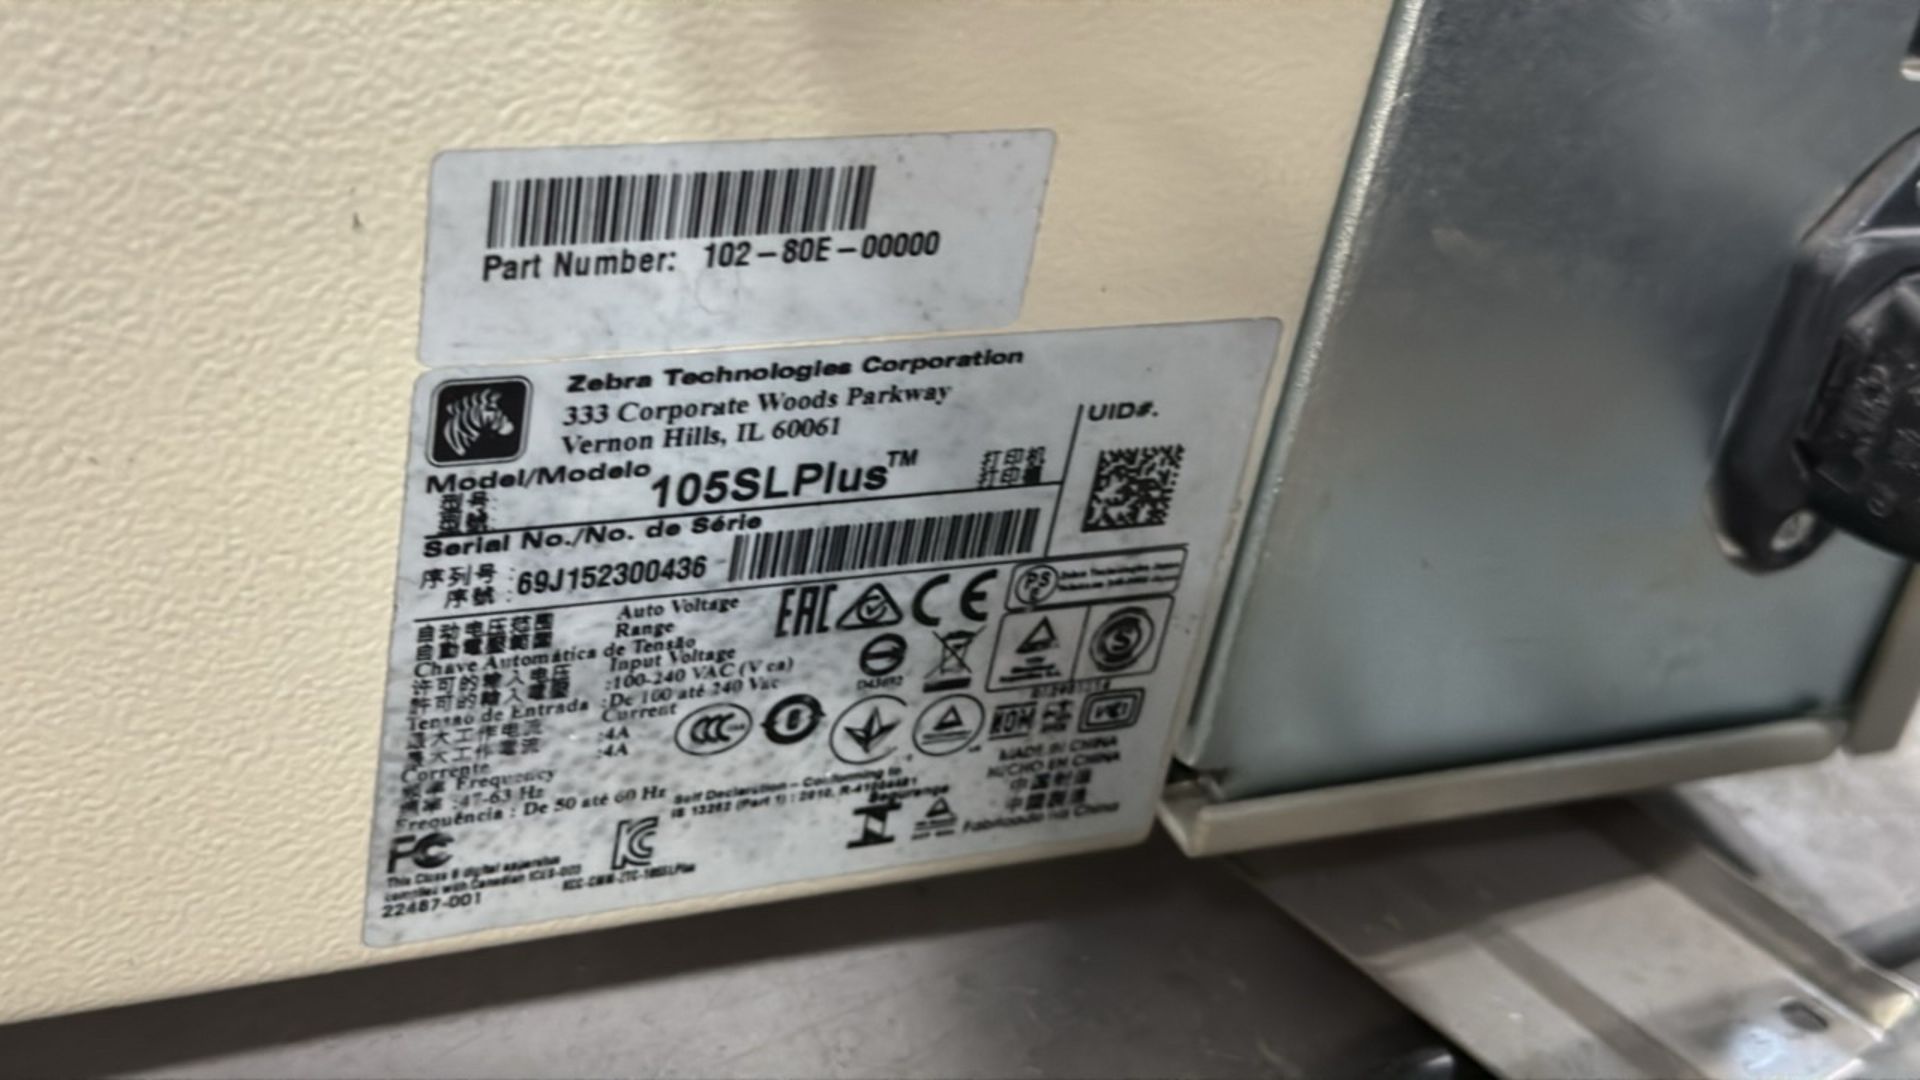 ref 35 - Zebra 105SL Plus Thermal Label Printer - Image 7 of 7